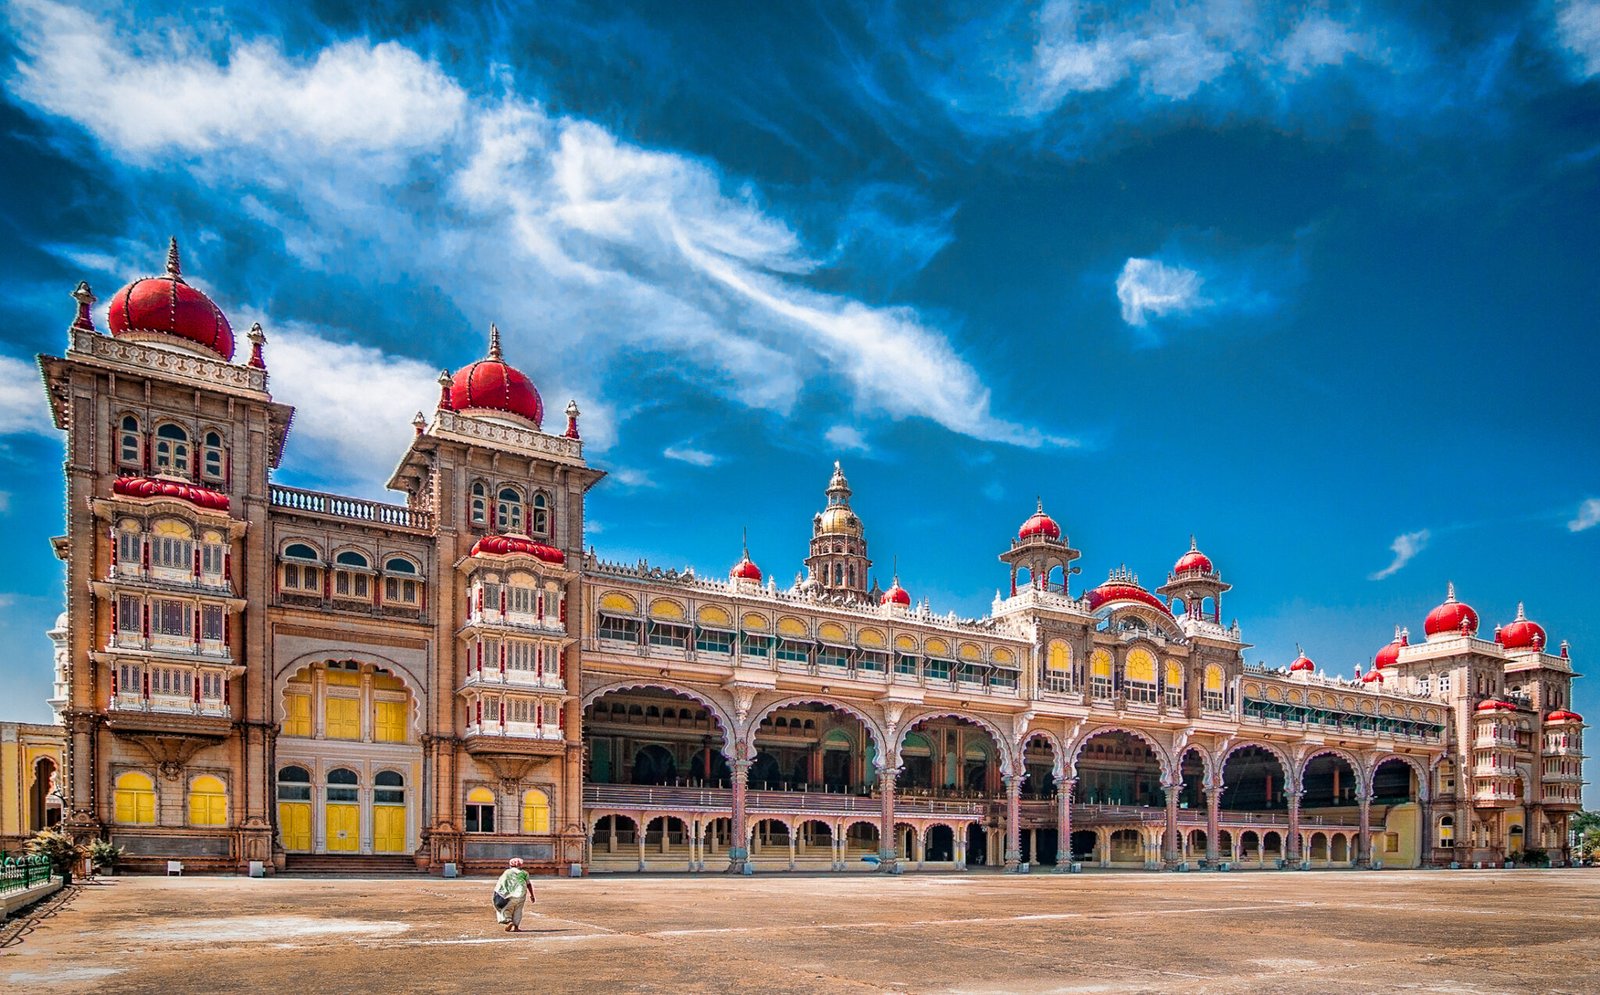 Mysore Palace (Courtesy: Mouthshut.com)